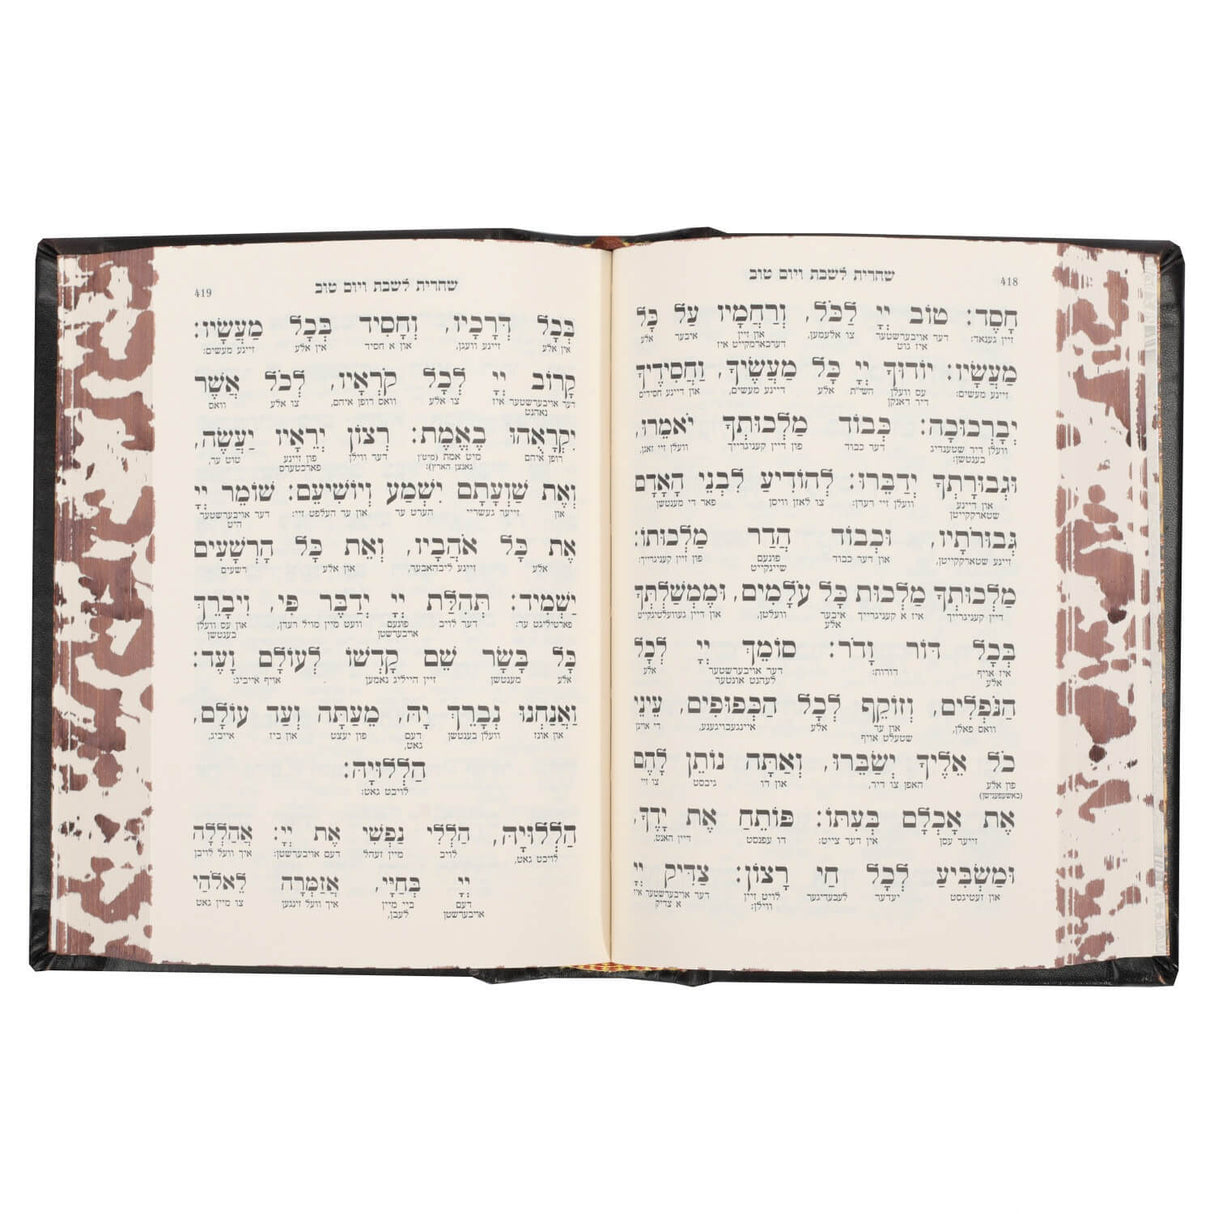 סידור מאירות השלם בינוני - מילה במילה / Siddur With Yiddish Interlinear Text Antique Bronze Leather